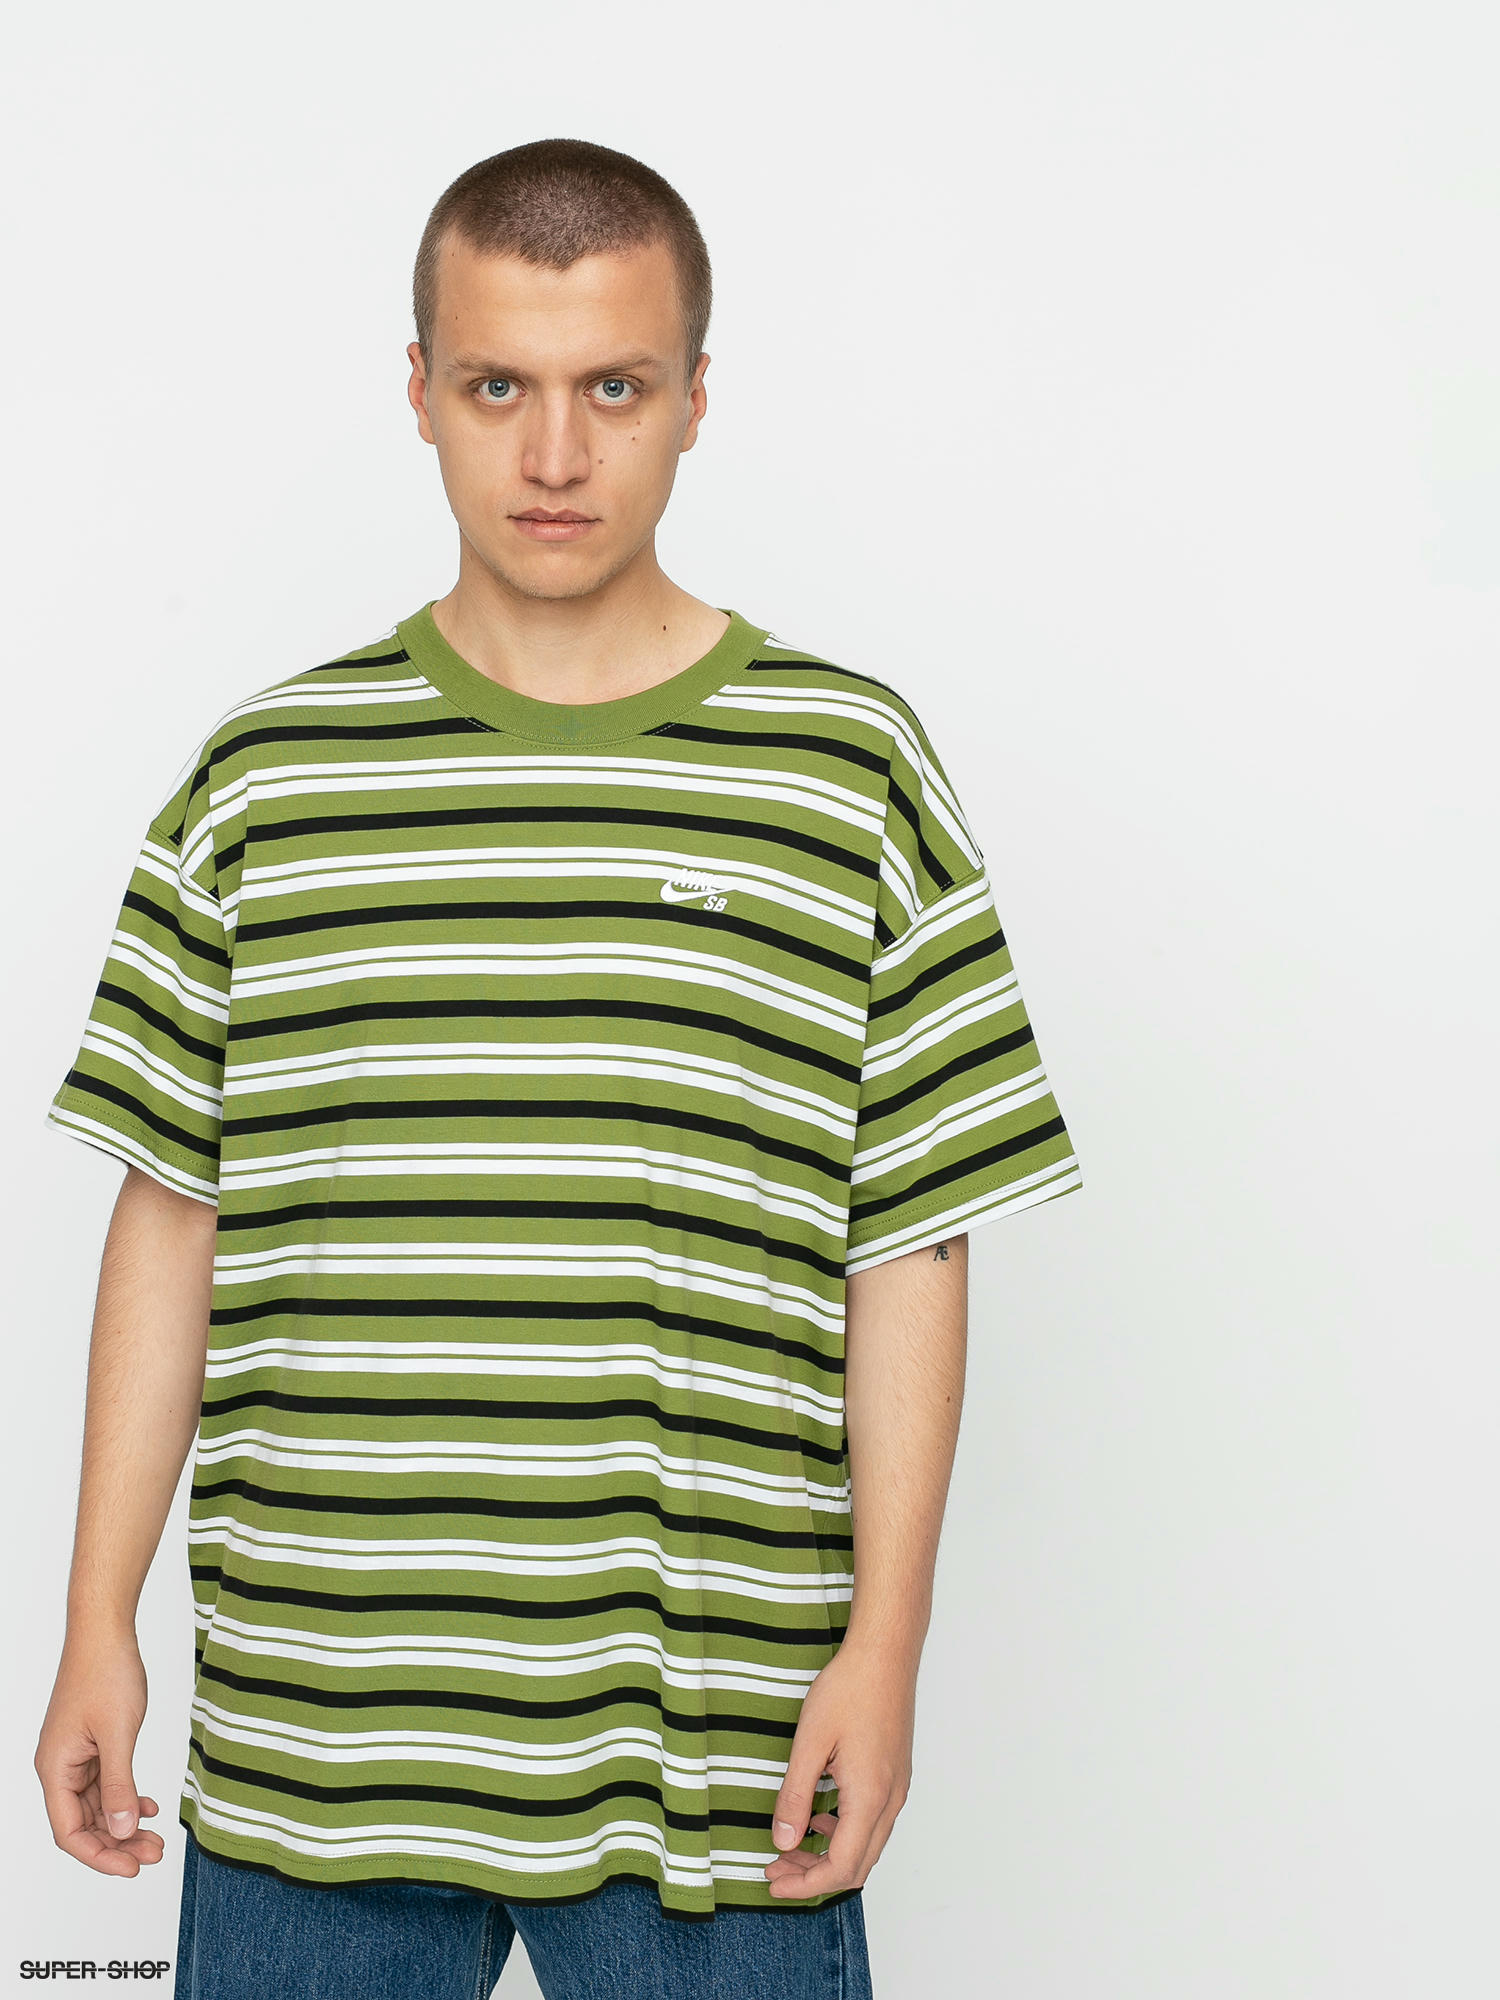 Nike SB Stripe T-shirt (asparagus)